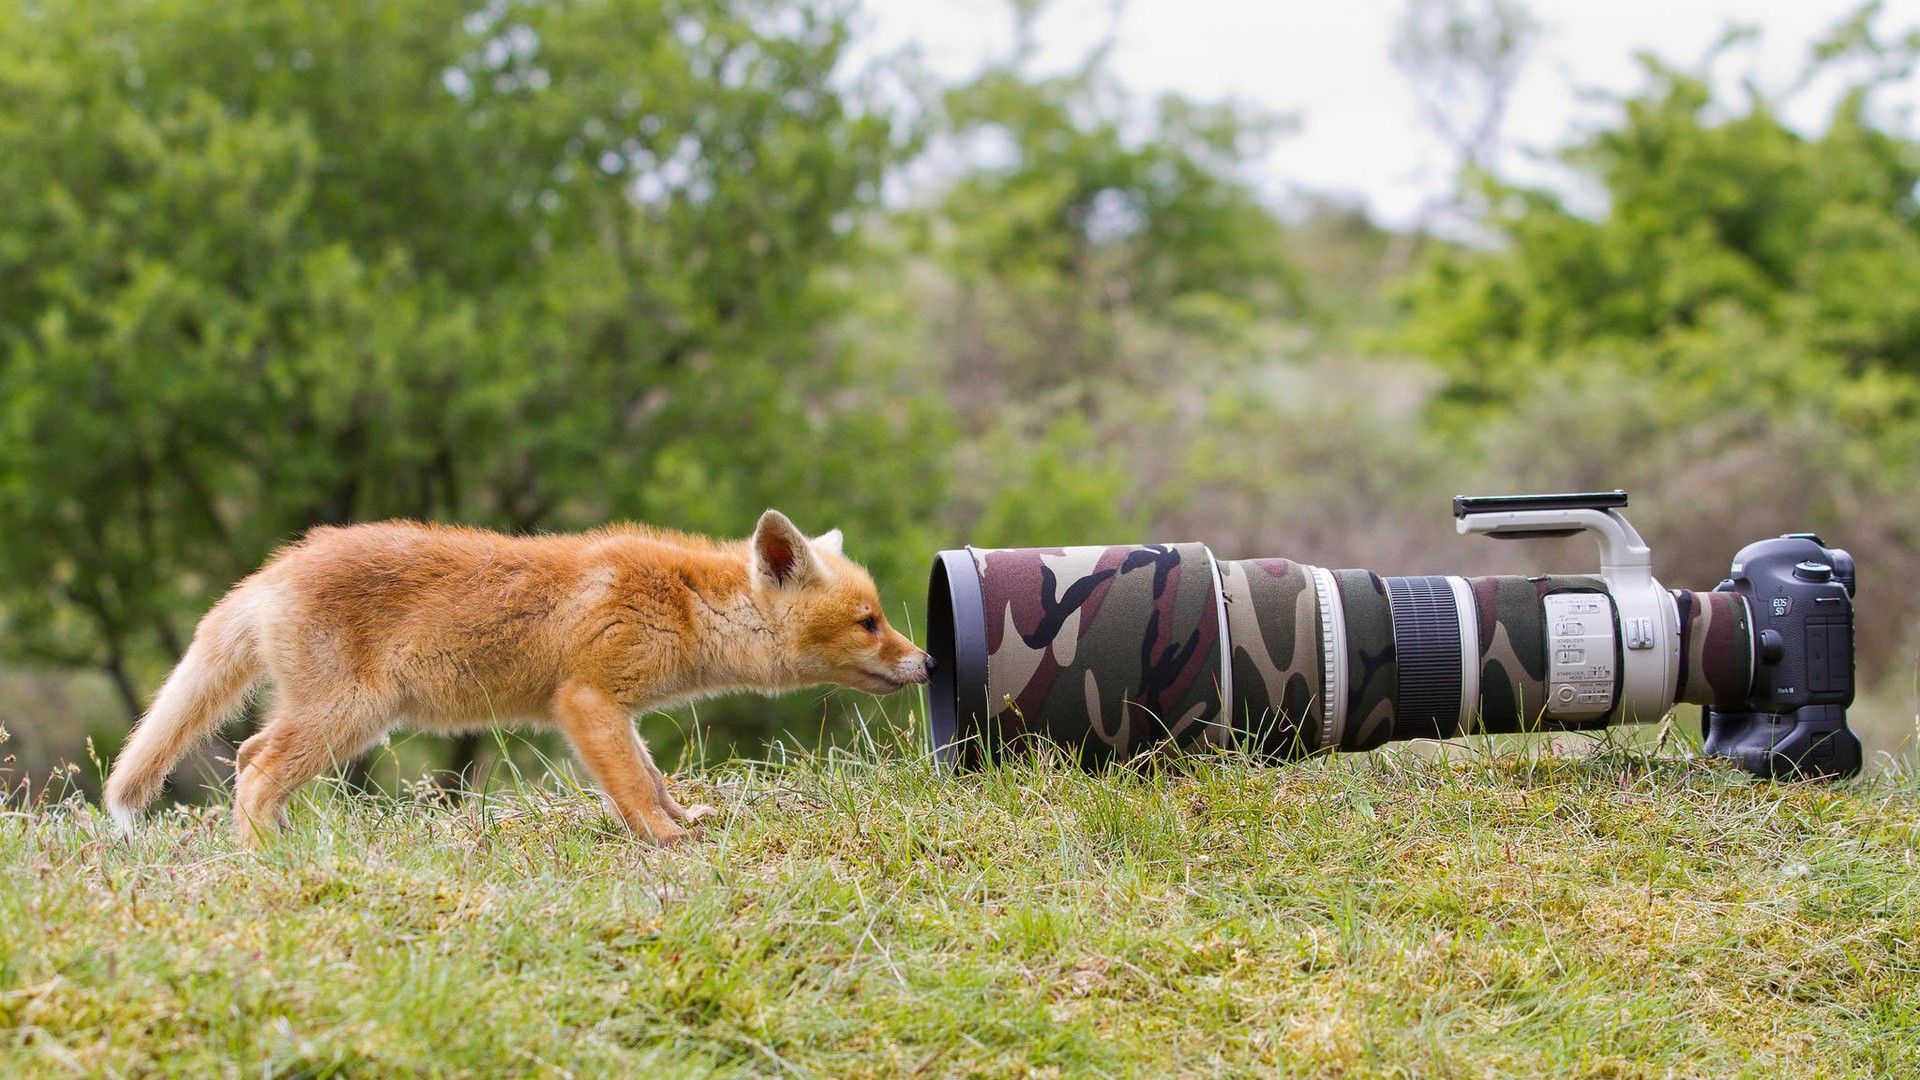 عکس بسیار بامزه از بچه روباه در حال کشف دوربین عکاسی